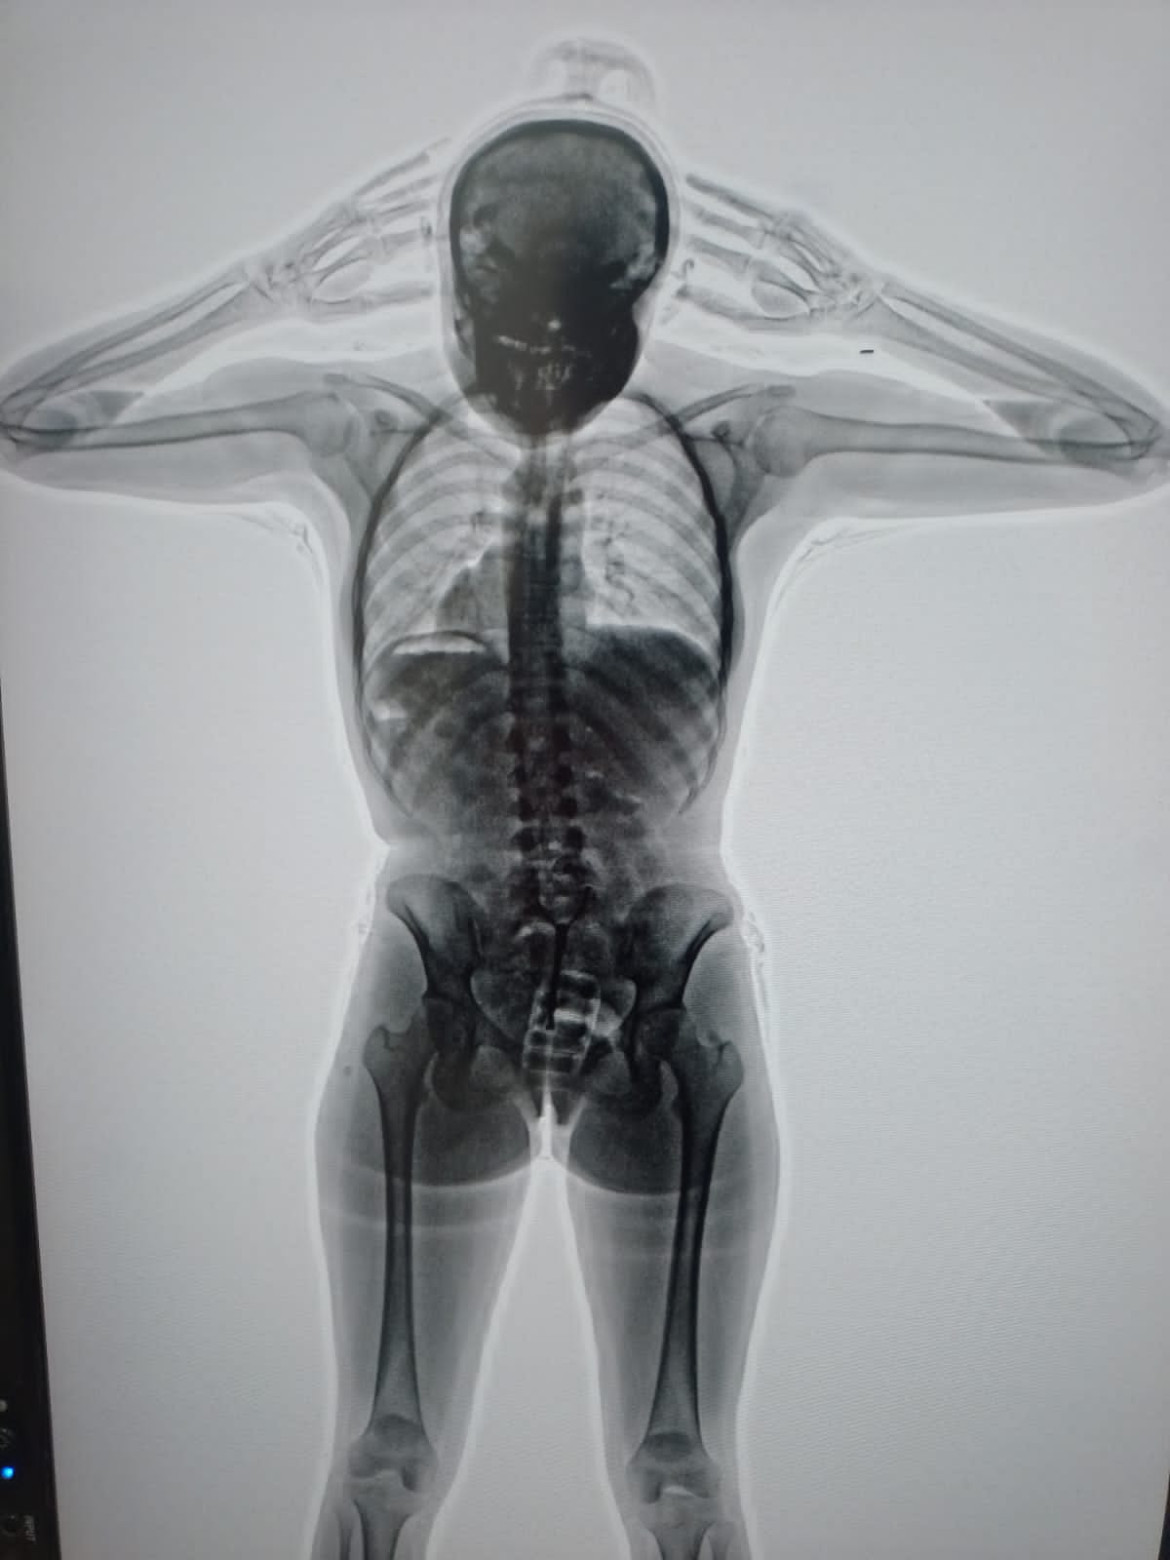 El body scan que detectó la presencia de cocaína en el cuerpo de la detenida. Foto: PSA.